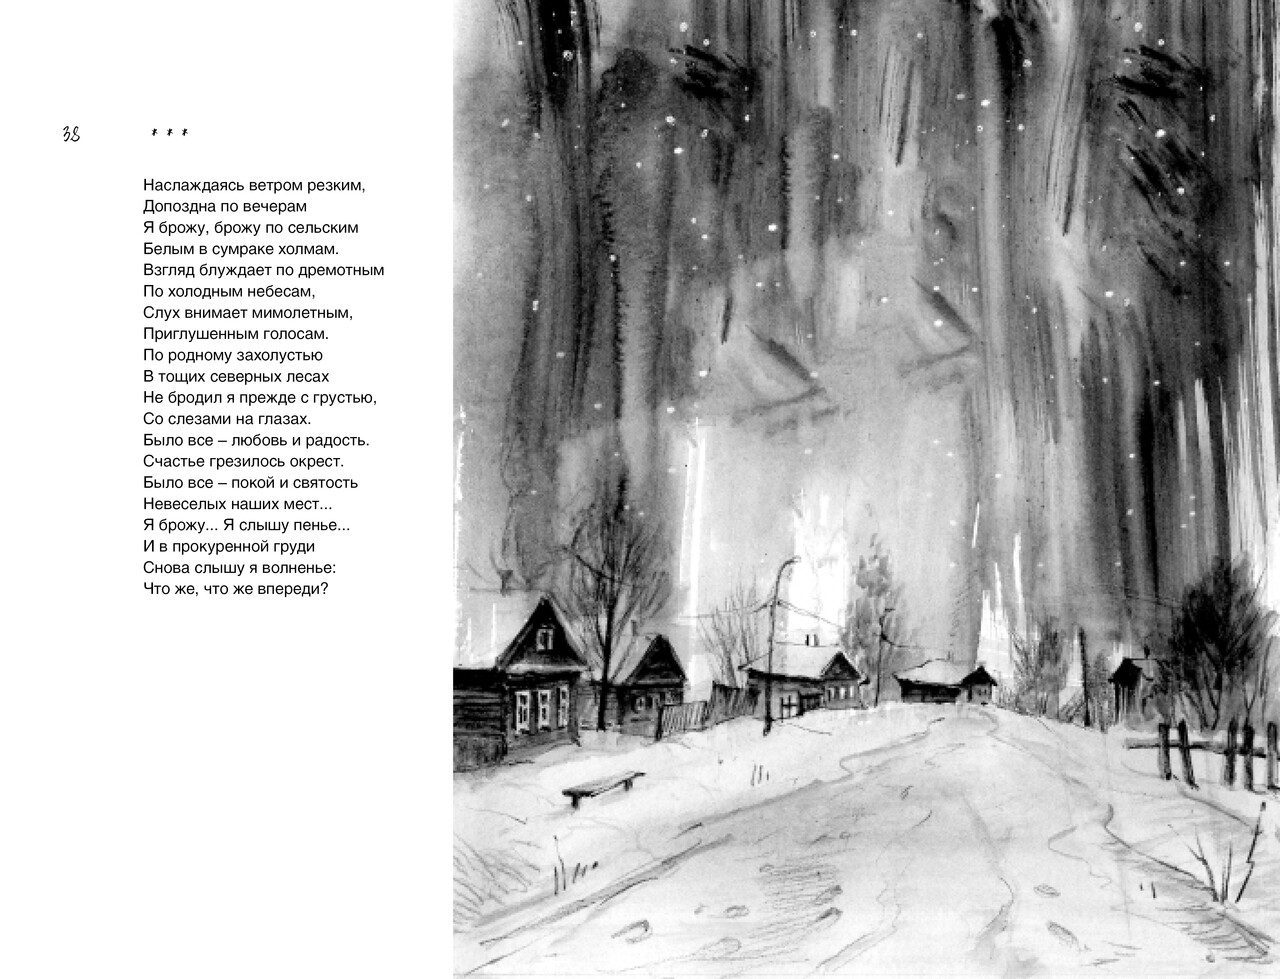 Иллюстрация к стихотворению Н. Рубцова